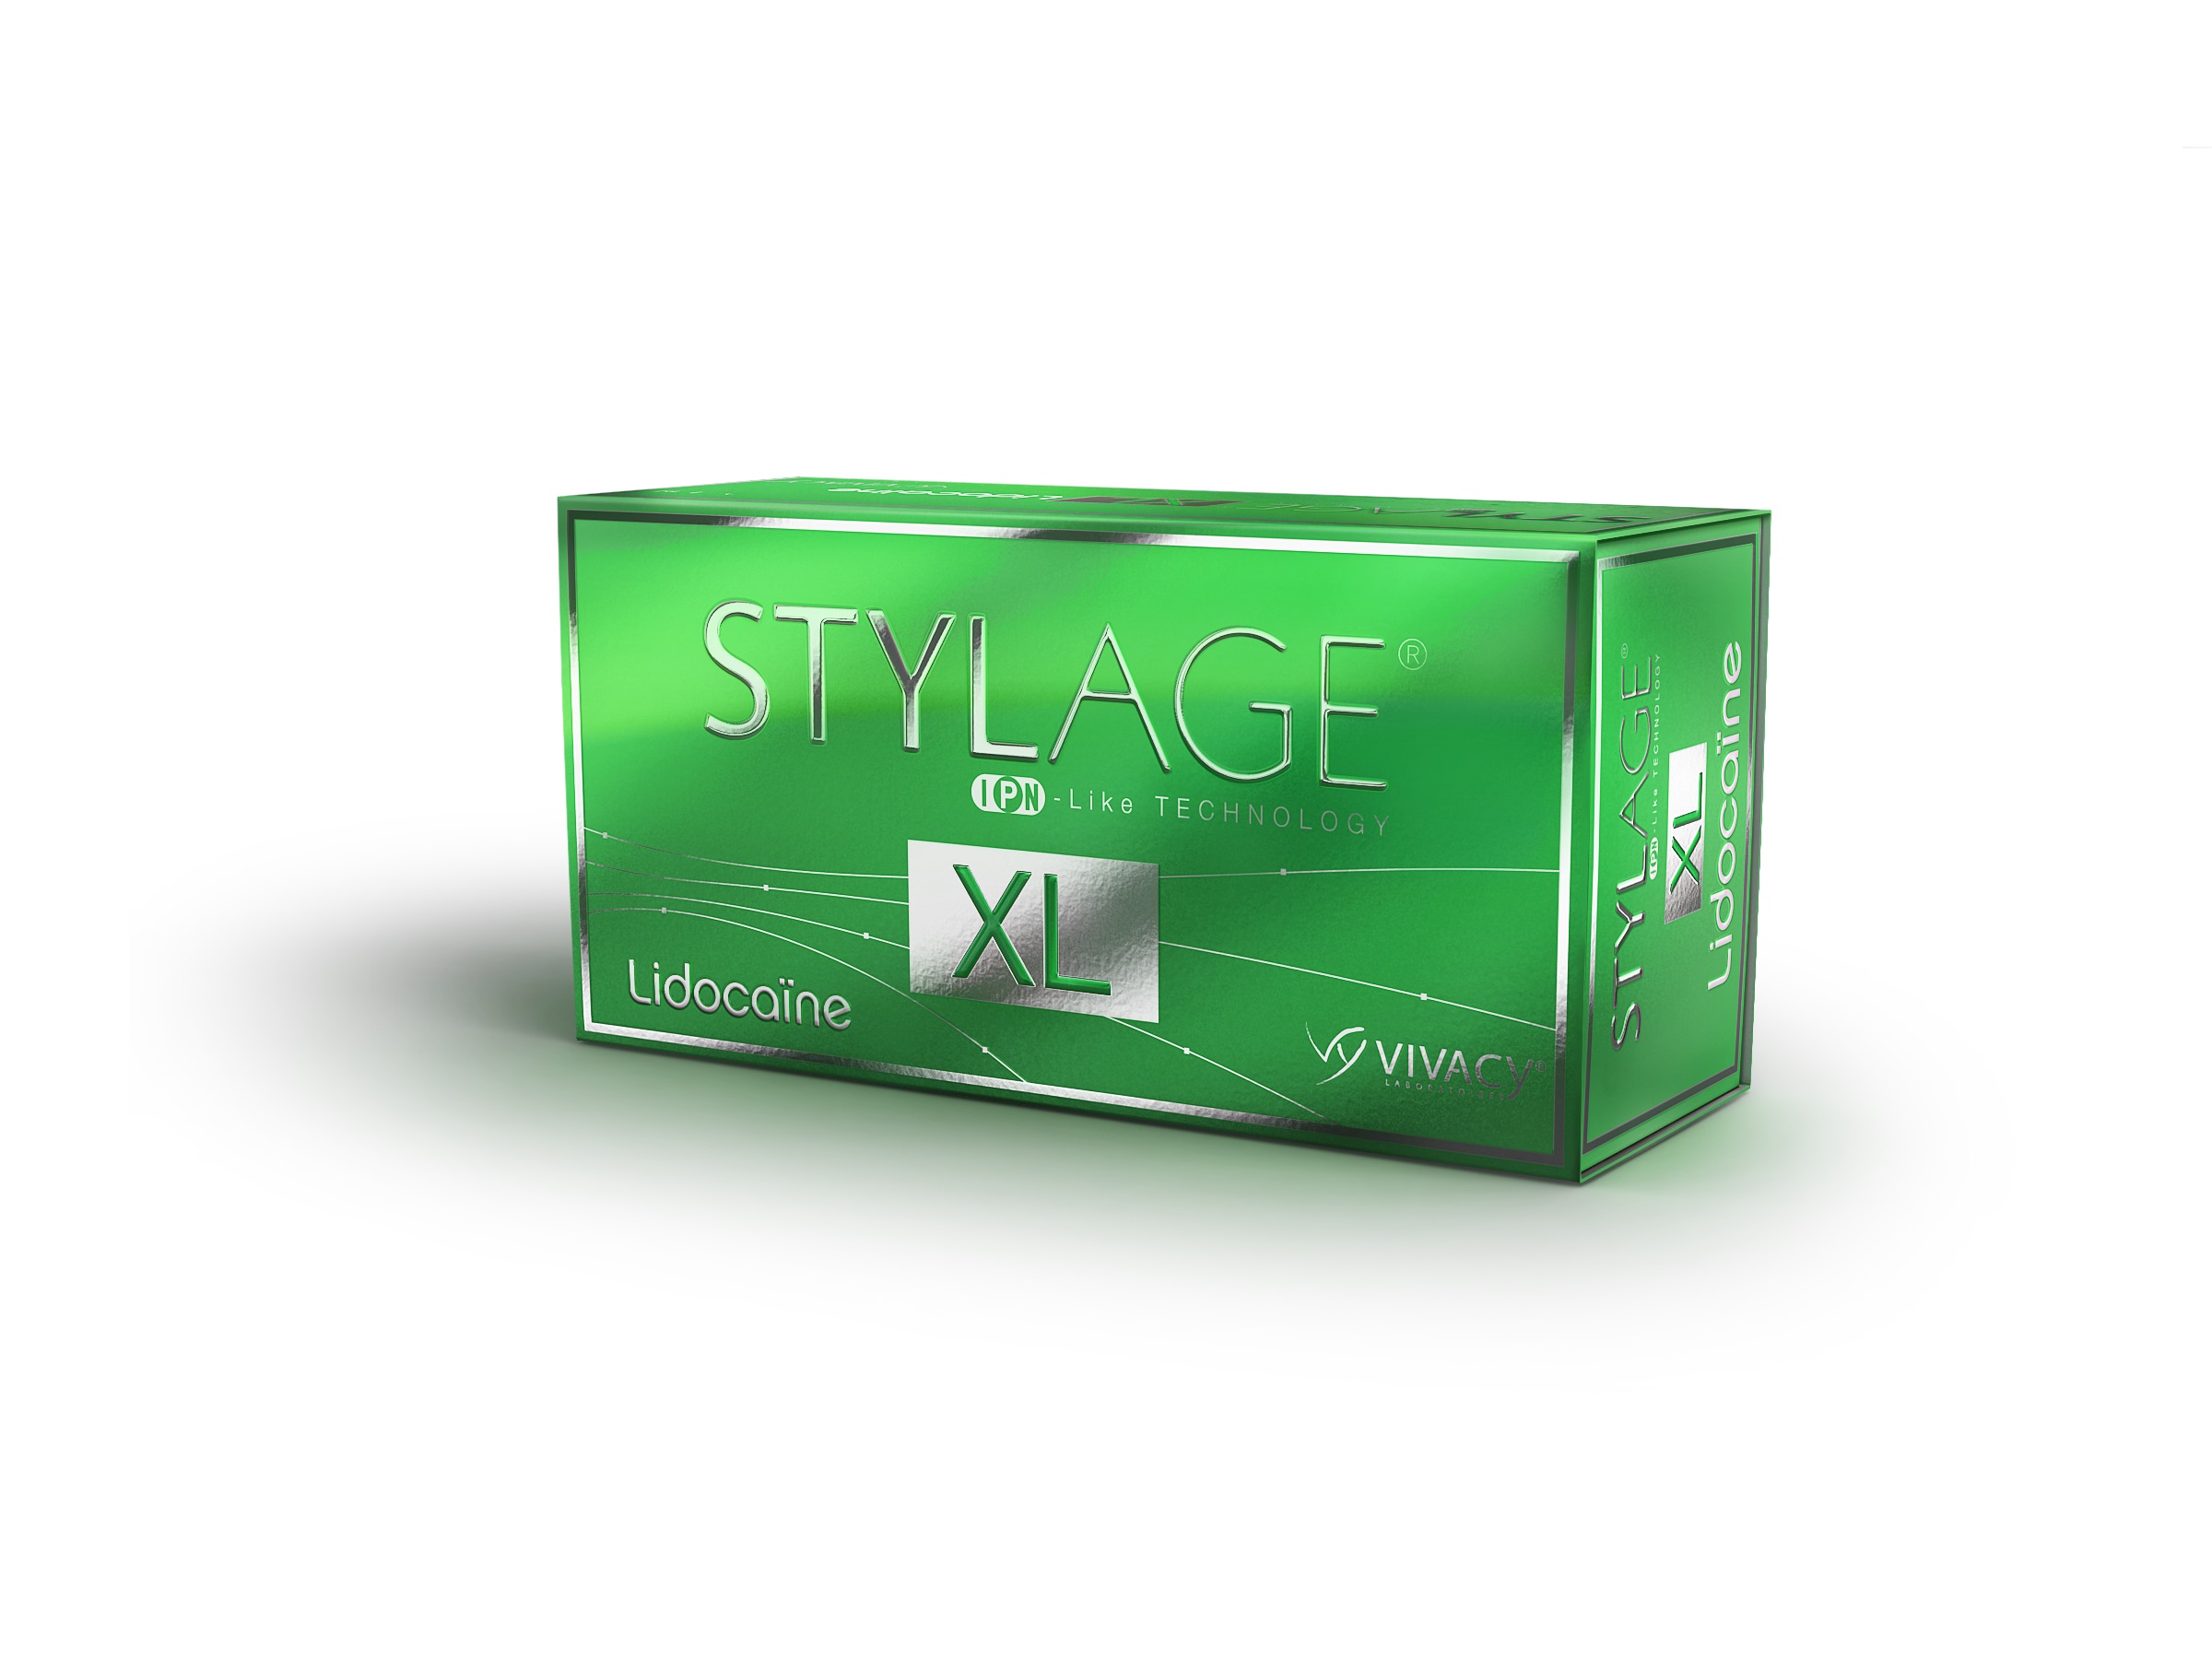 STYLAGE XL Lidocaine